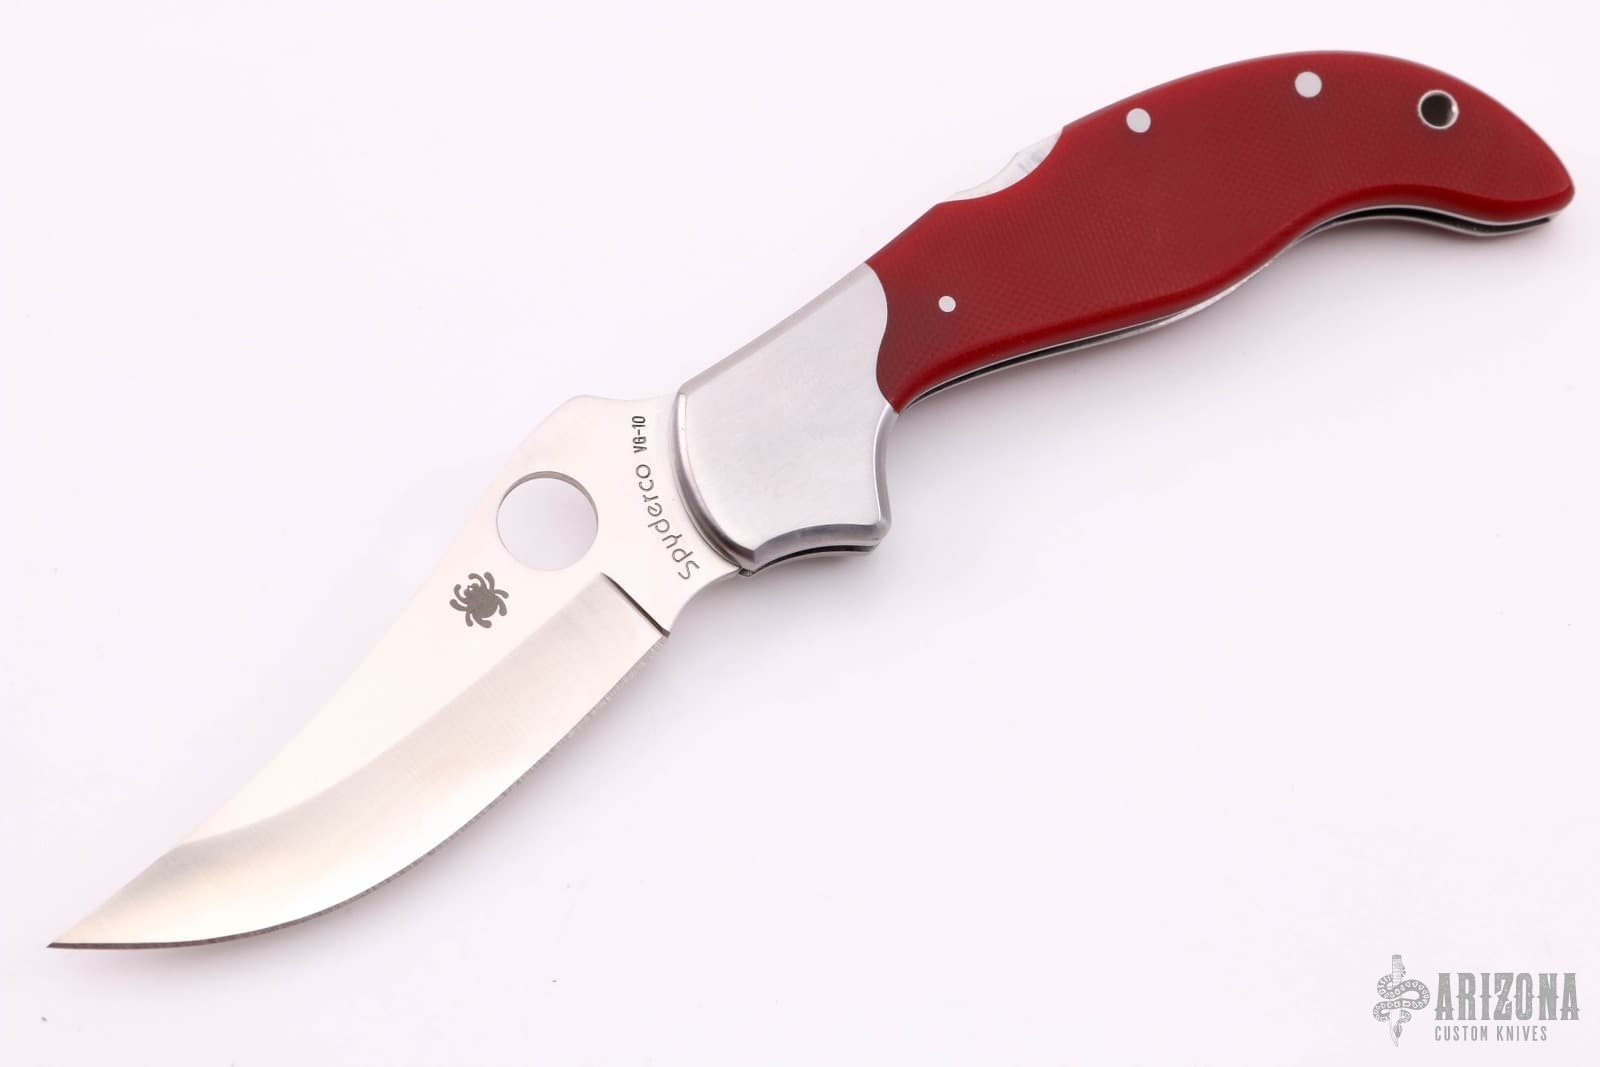 Persian by Ed Schempp | Arizona Custom Knives